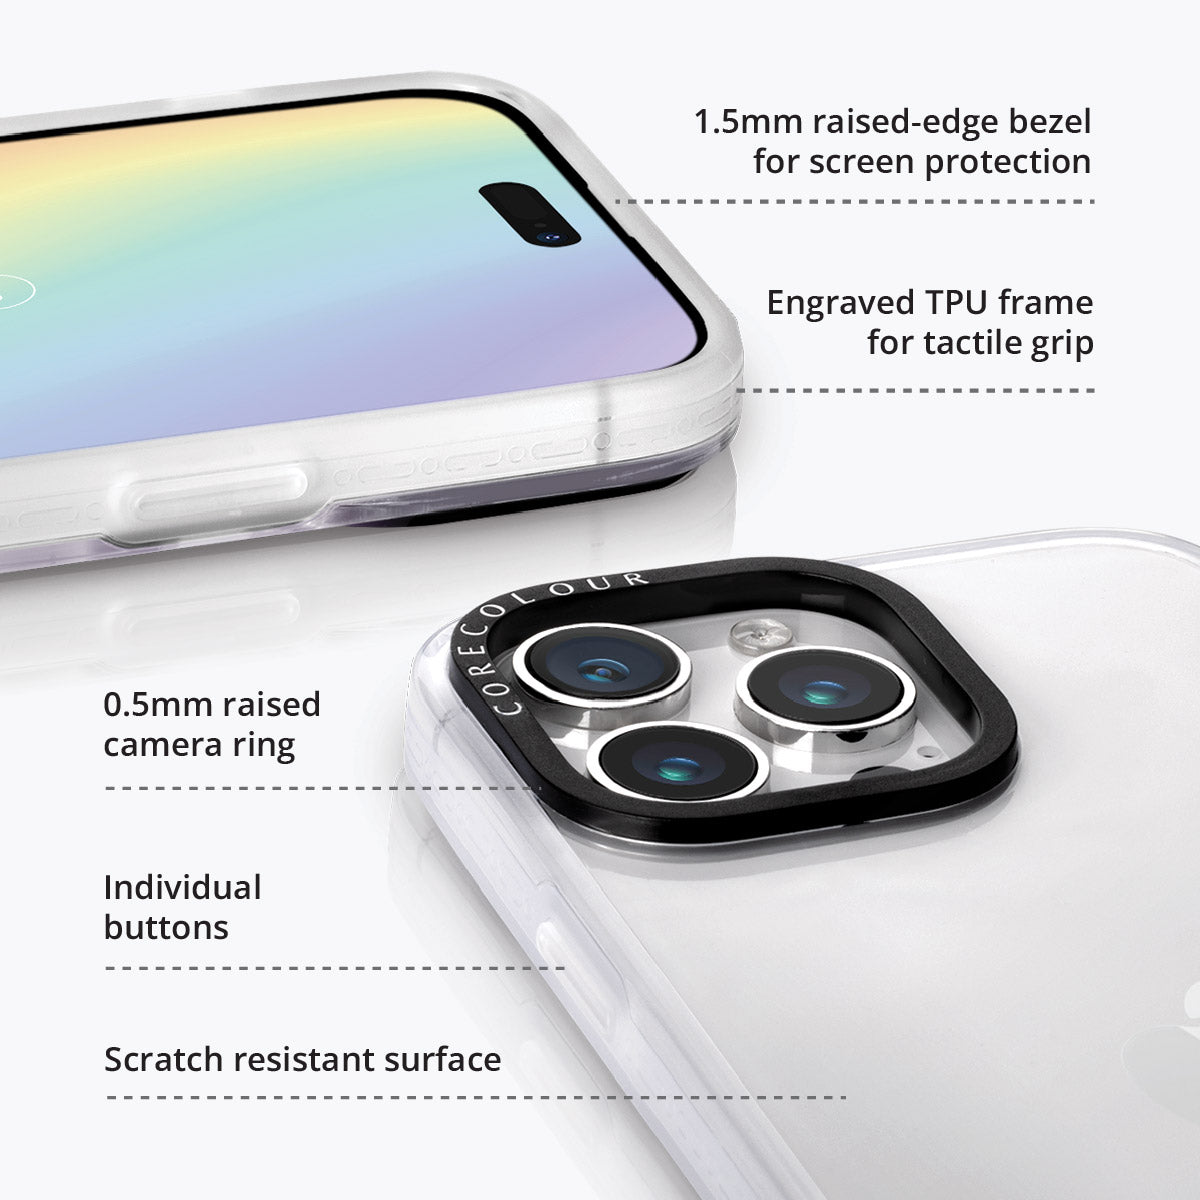 iPhone 12 Pro Max Mauve Leaf Phone Case MagSafe Compatible - CORECOLOUR AU